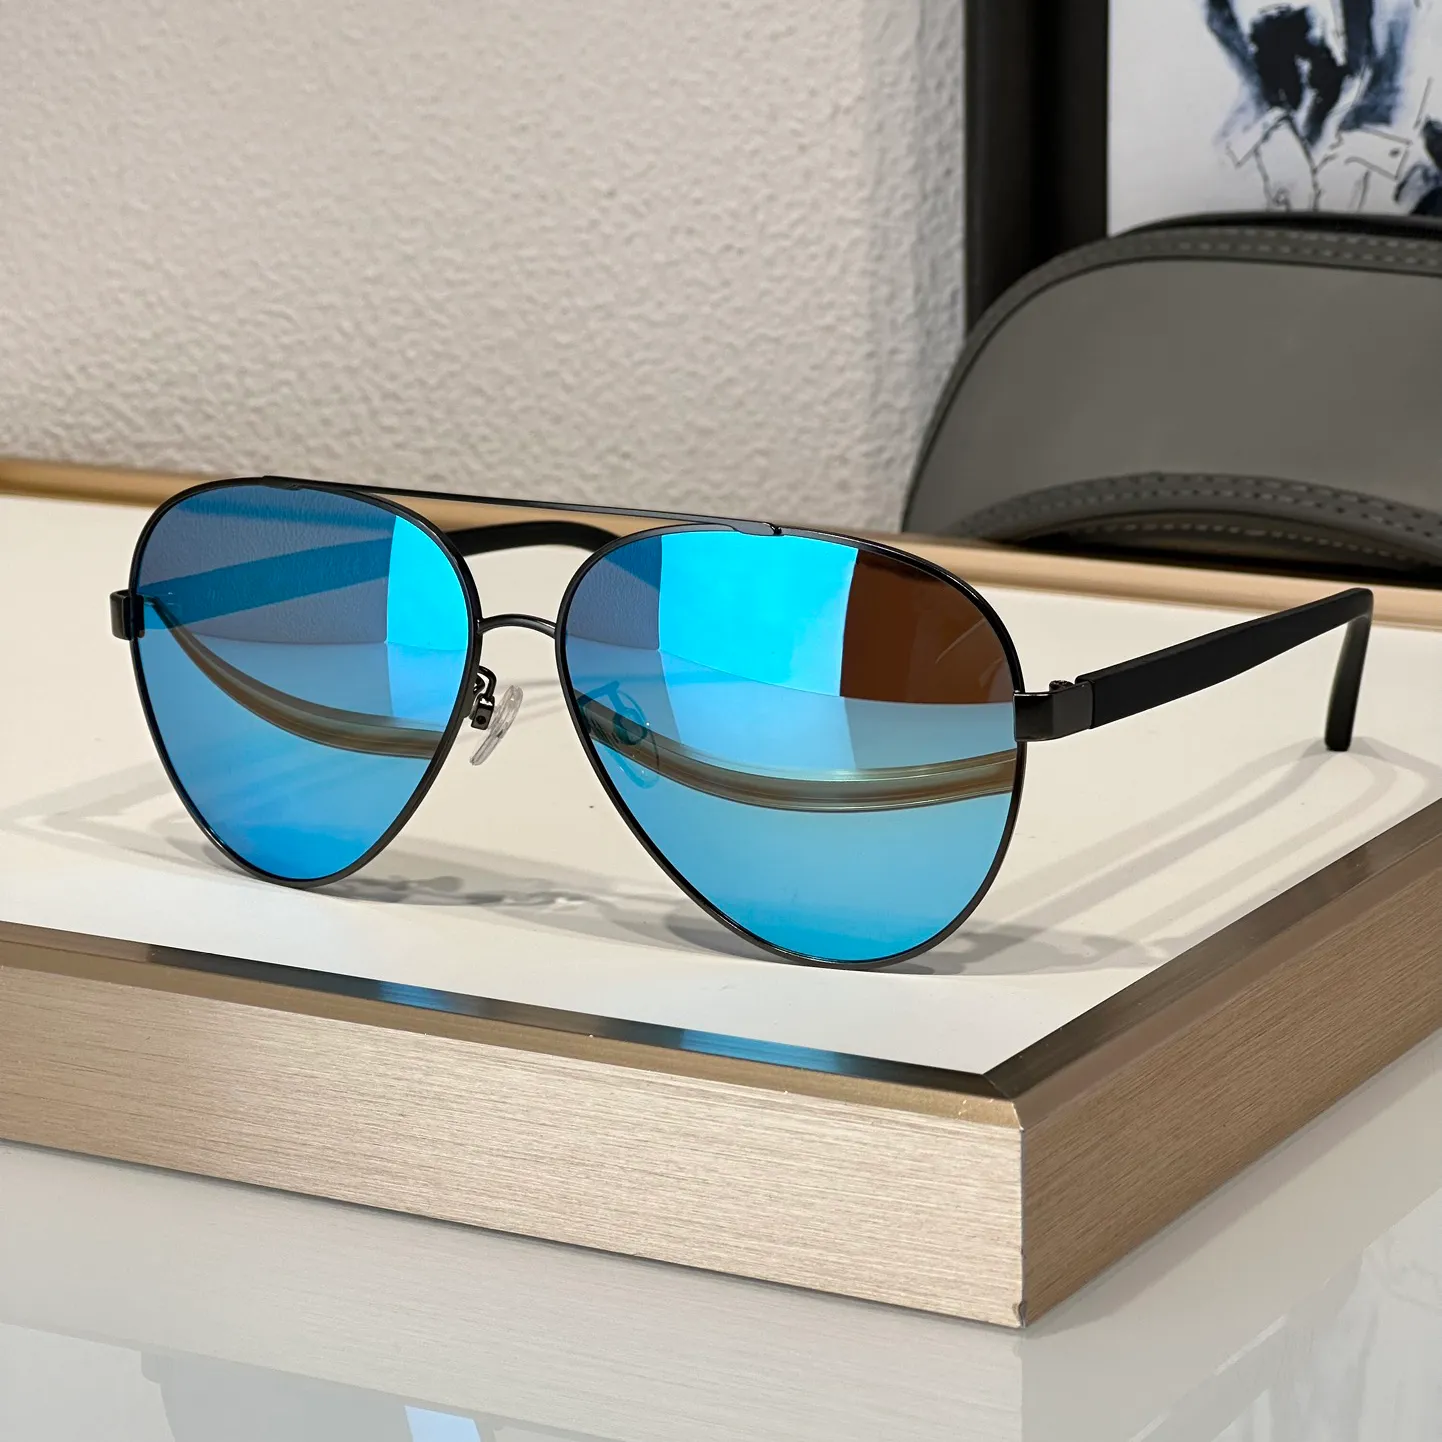 남성 여성 디자인을위한 인기 선글라스 2046 타원형 패션 가벼운 세련된 고가 레저 레저 스타일 안티 ultraviolet 레트로 플레이트 풀 프레임 안경 무작위 상자